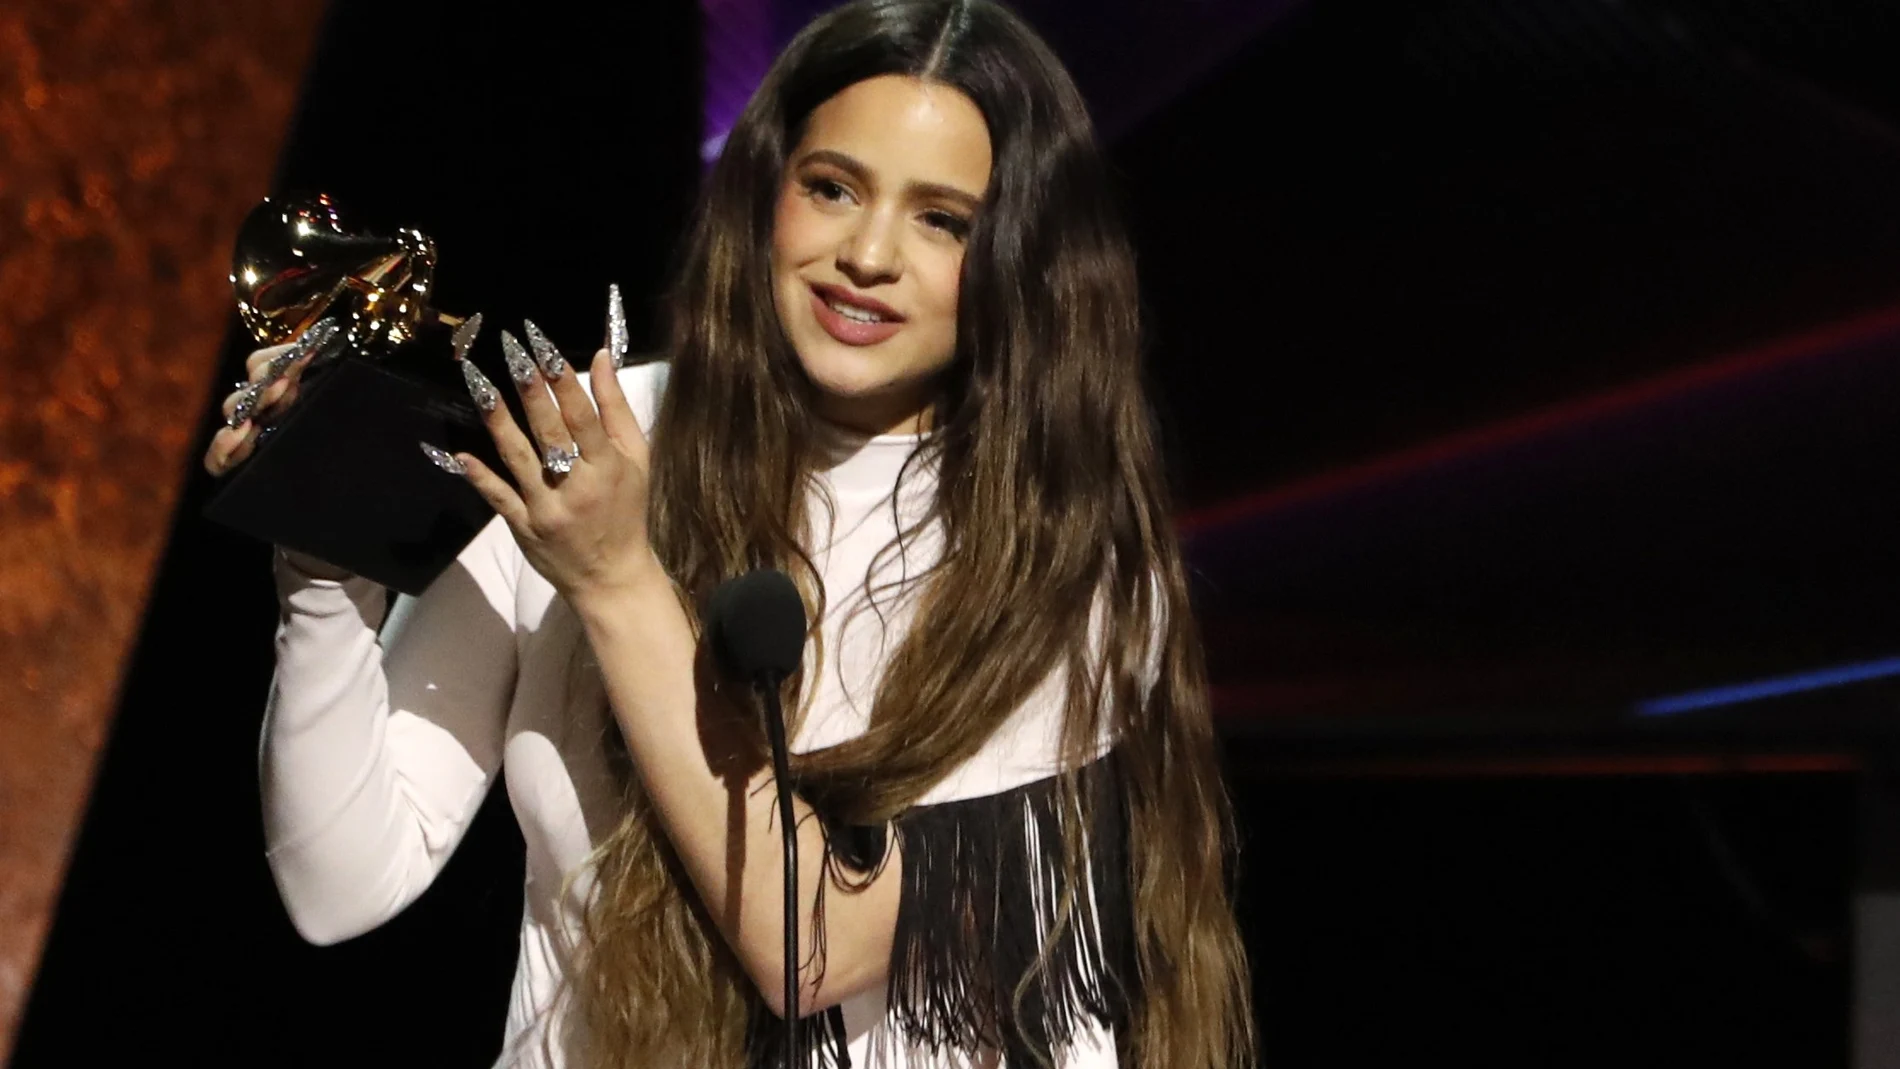 Rosalía recoge el premio Best Latin Rock, Urban or Alternative Album por "El Mal Querer."